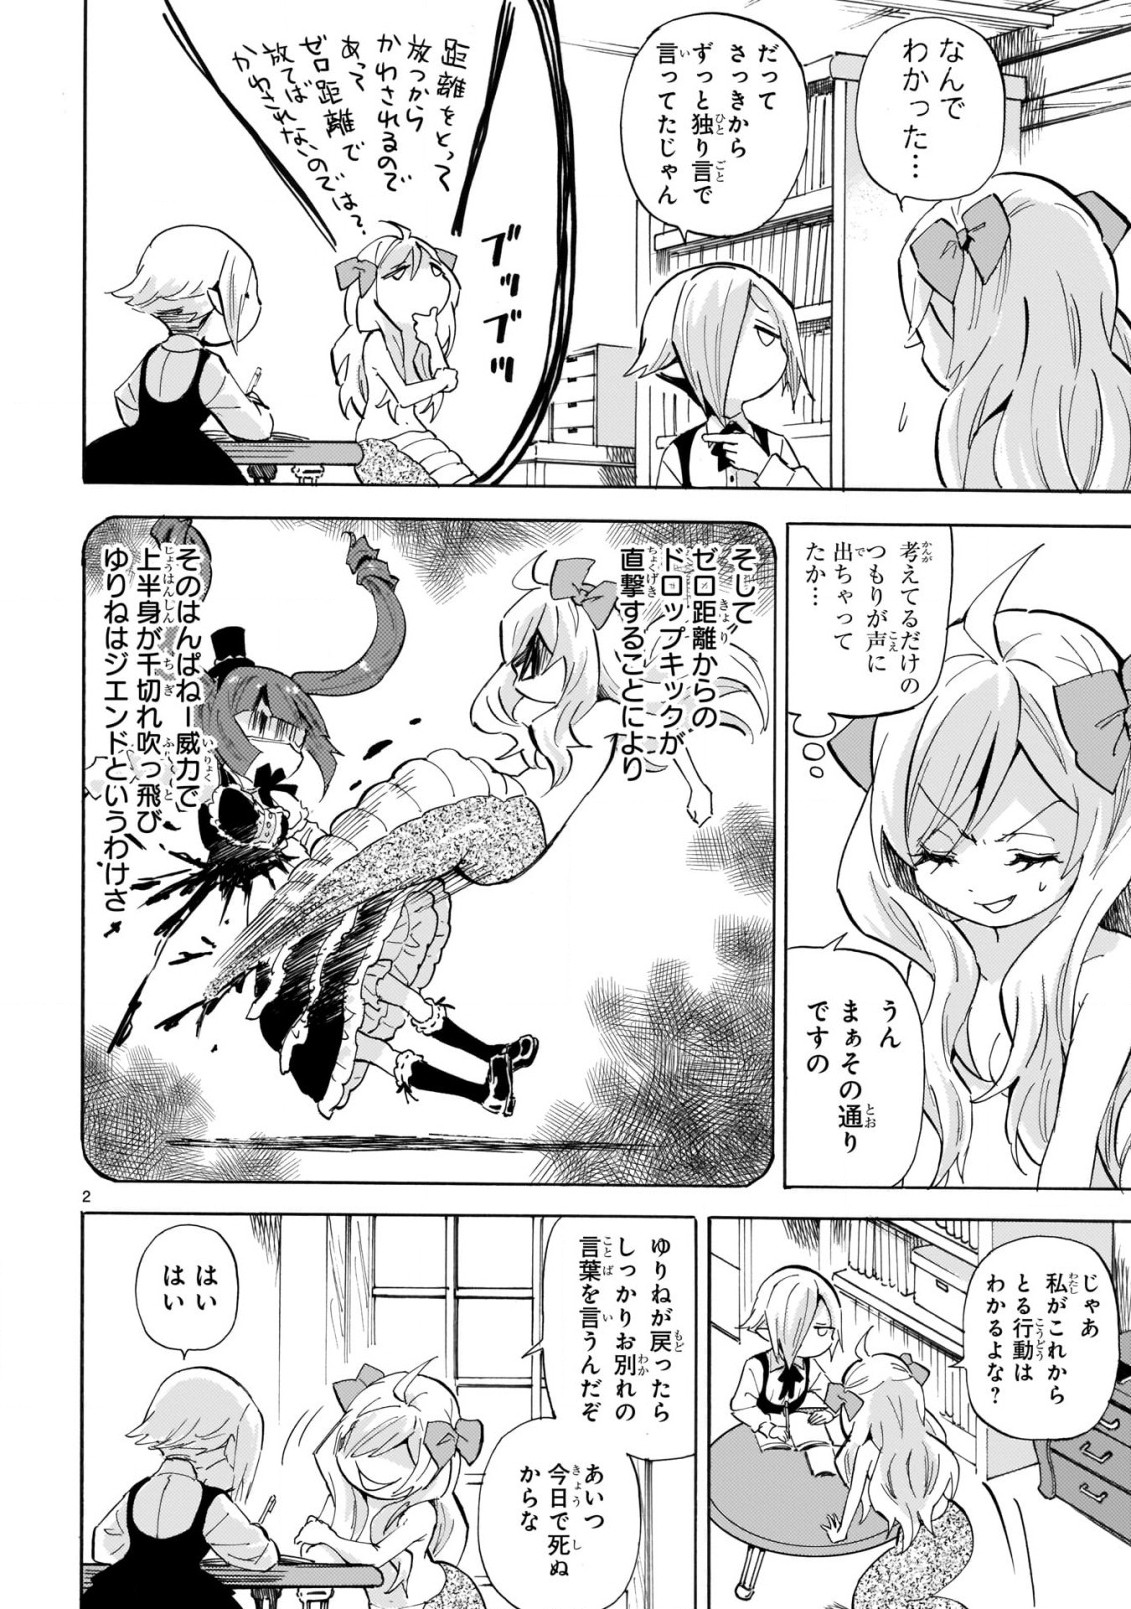 Jashin-chan Dropkick - Chapter 223 - Page 2